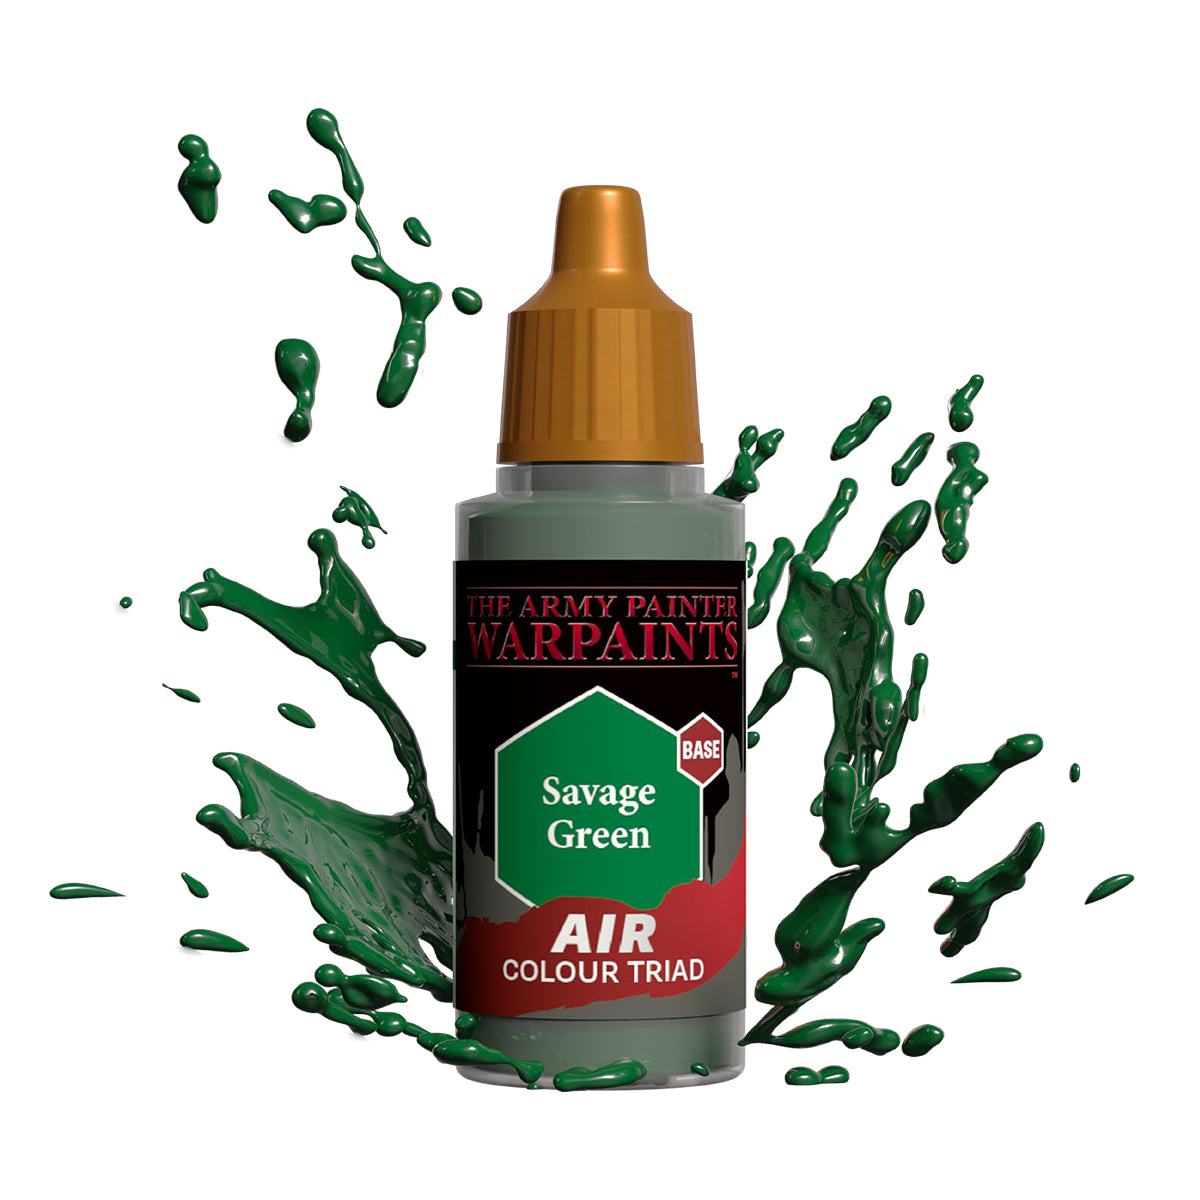 Warpaints Air: Savage Green